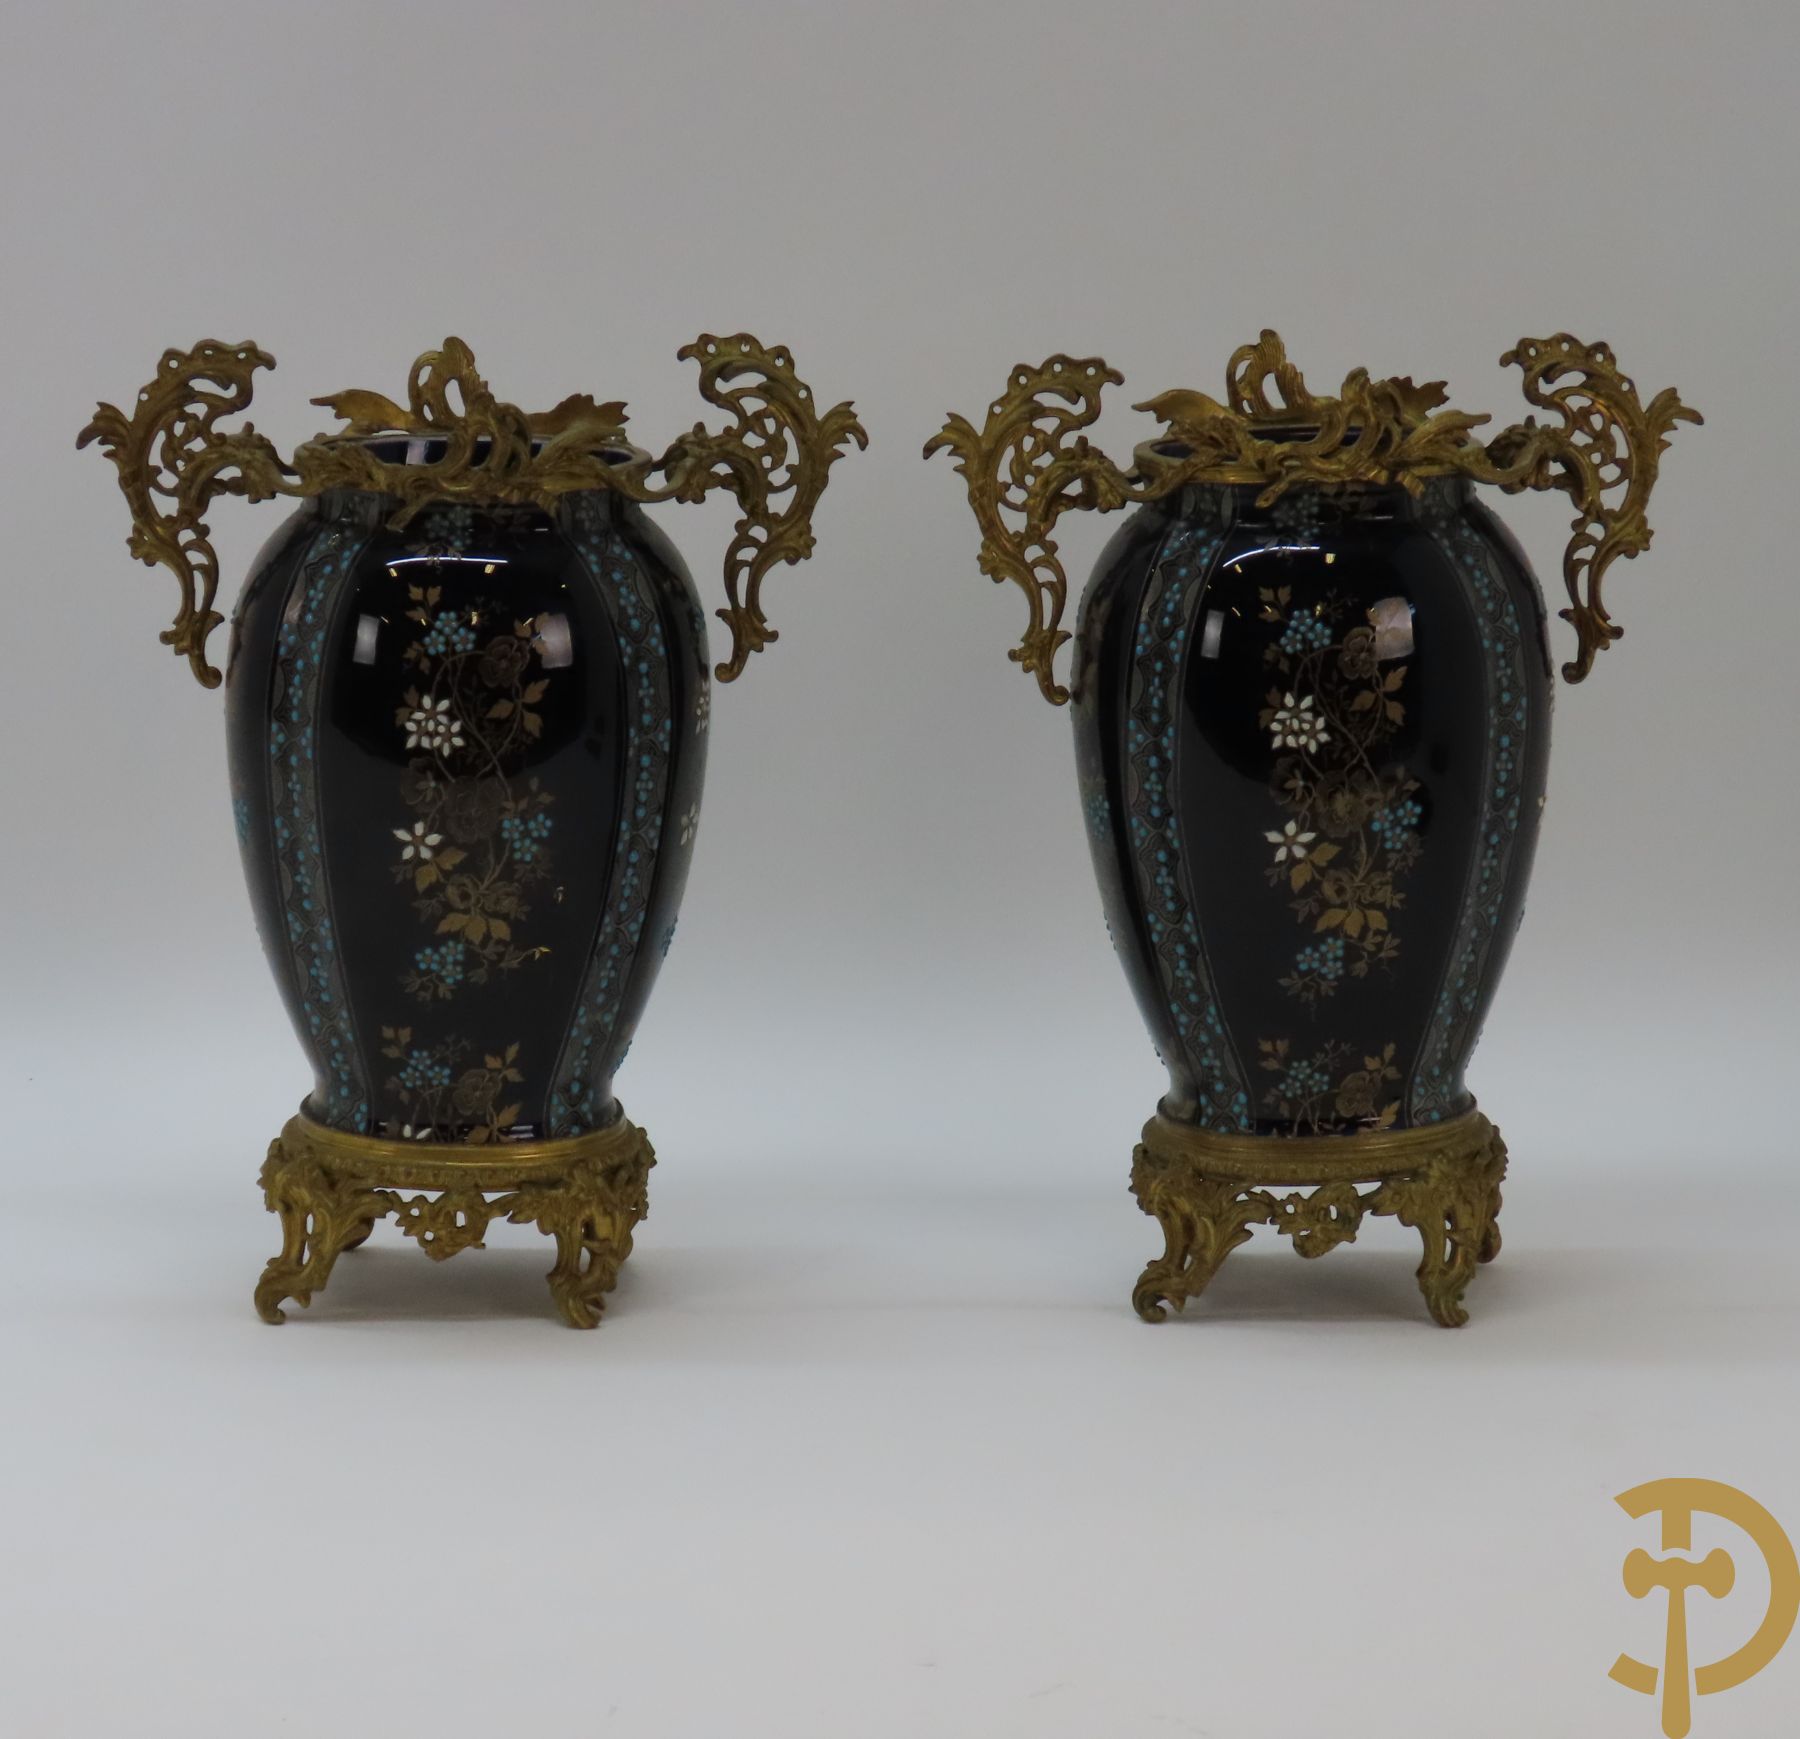 Paar kobaltblauwe porseleinen vazen met bloemendecor gevat in bronzen houder met bronsbeslag van accanthusranken